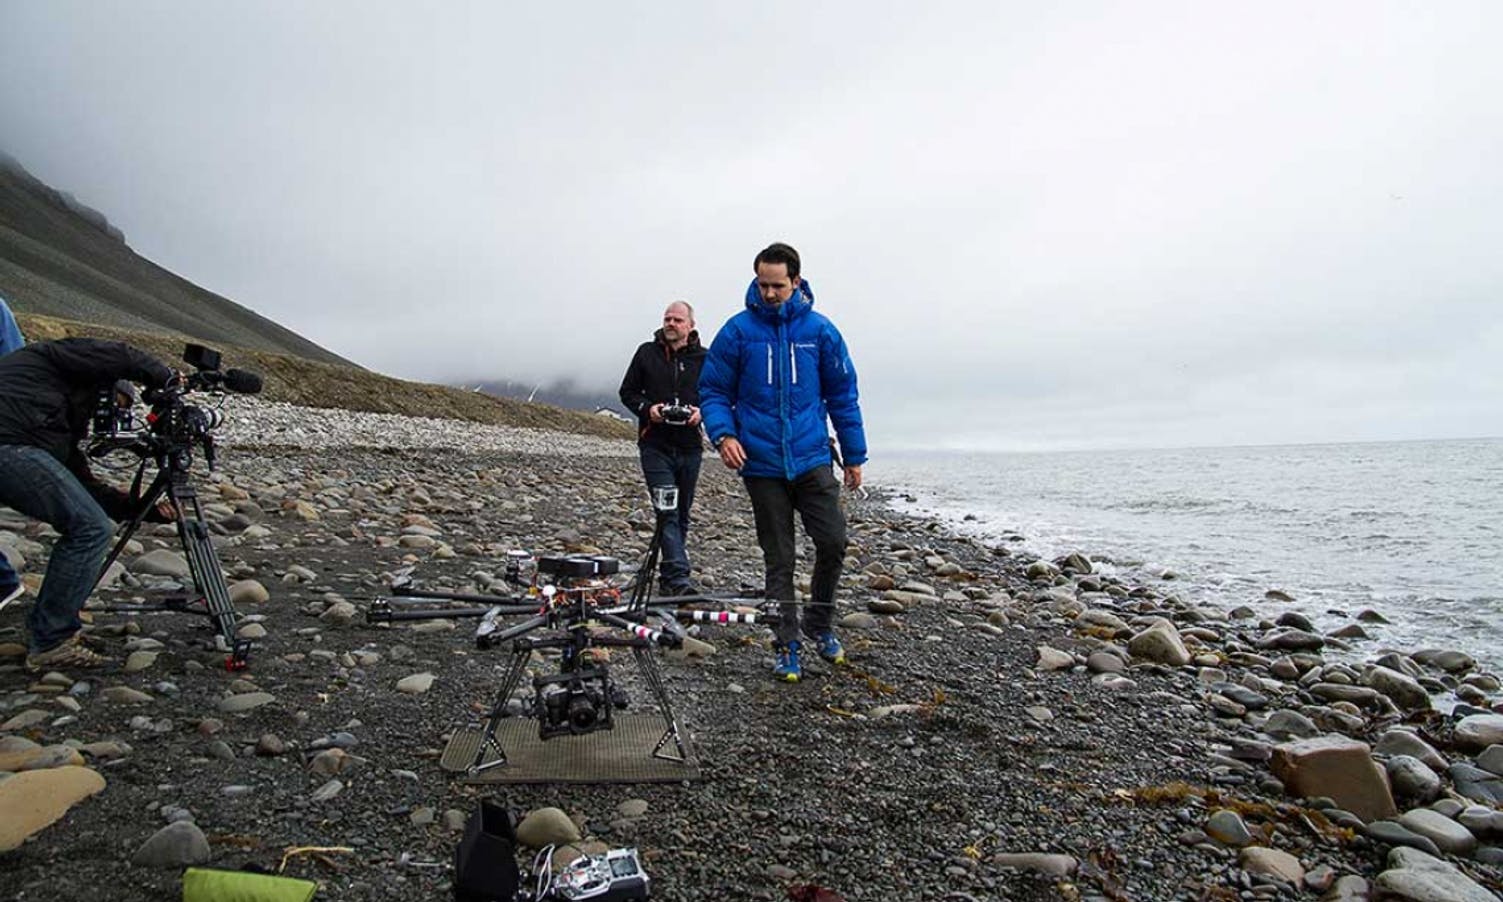 Filma for BBC på Svalbard